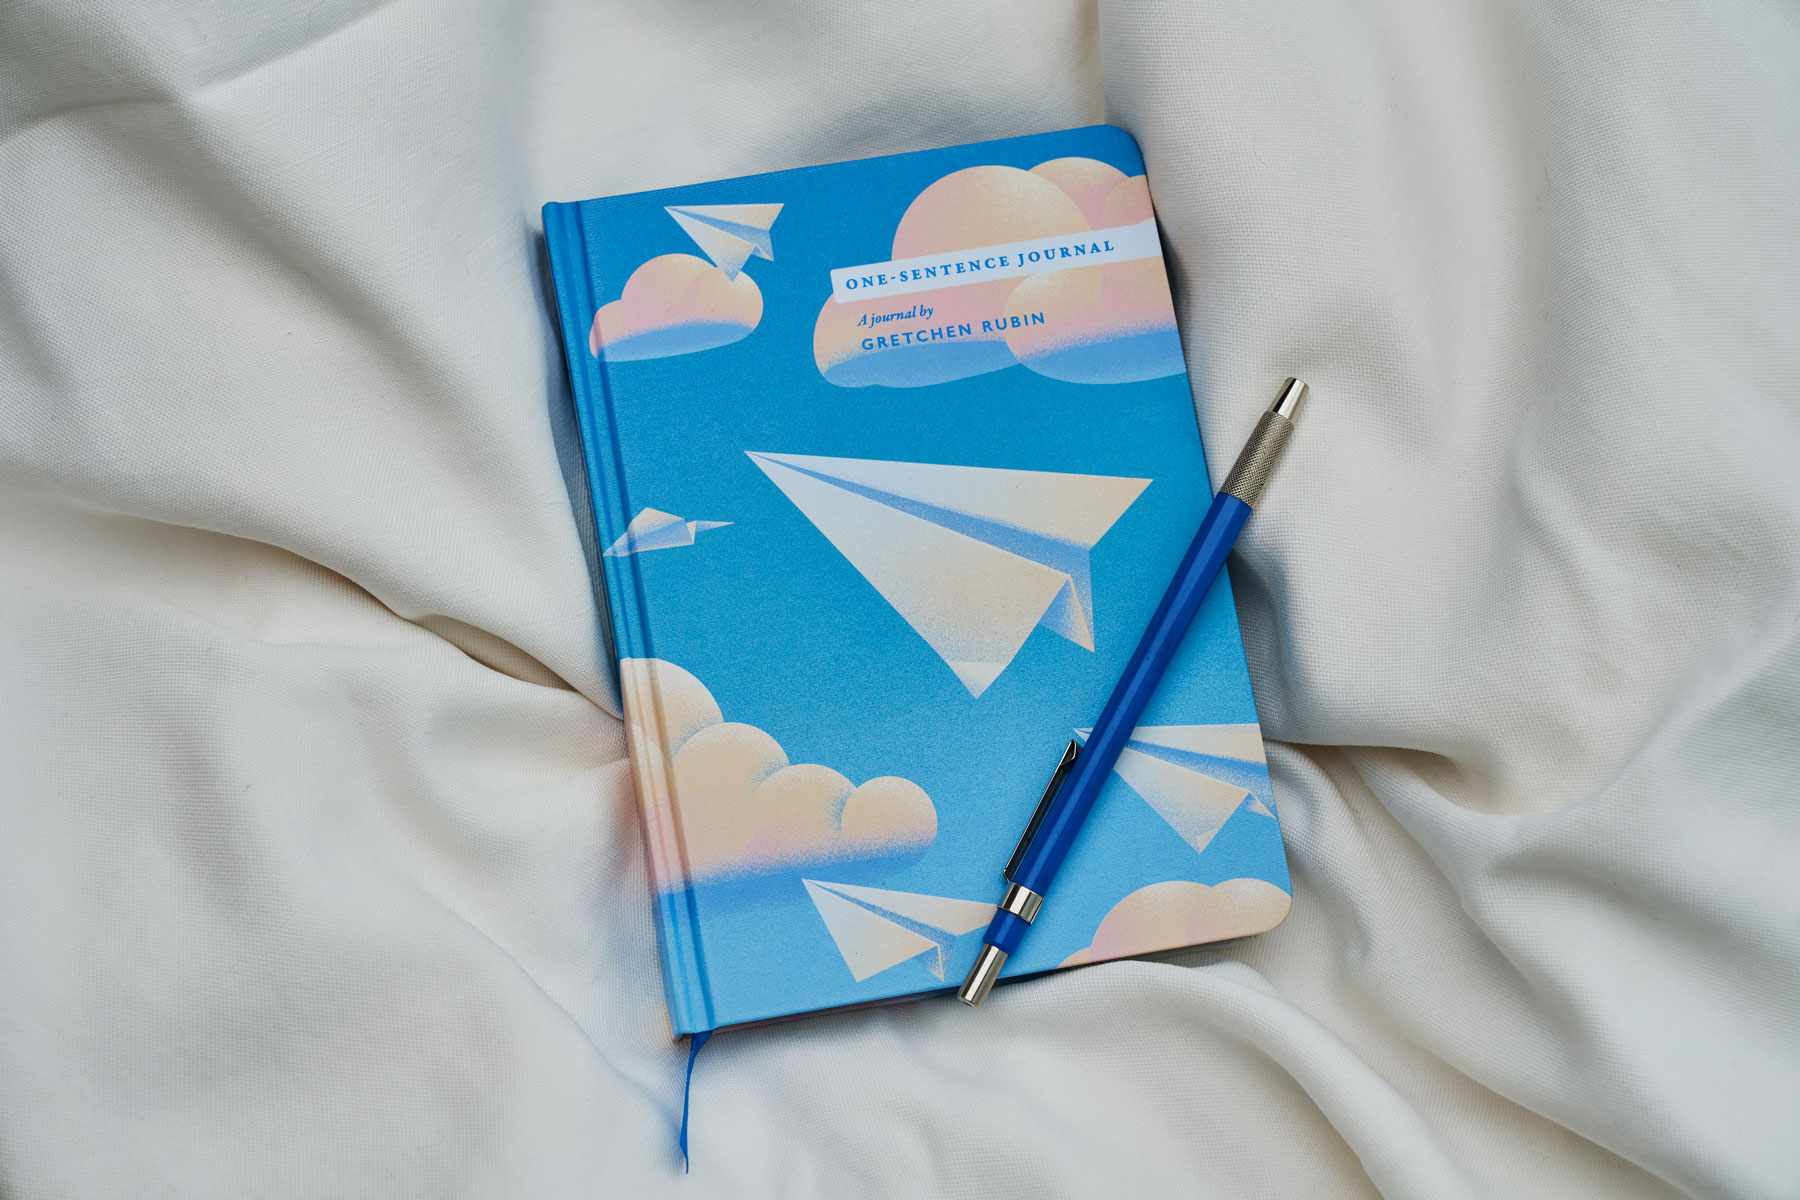 Journal bleu avec des avions en papier sur la couverture